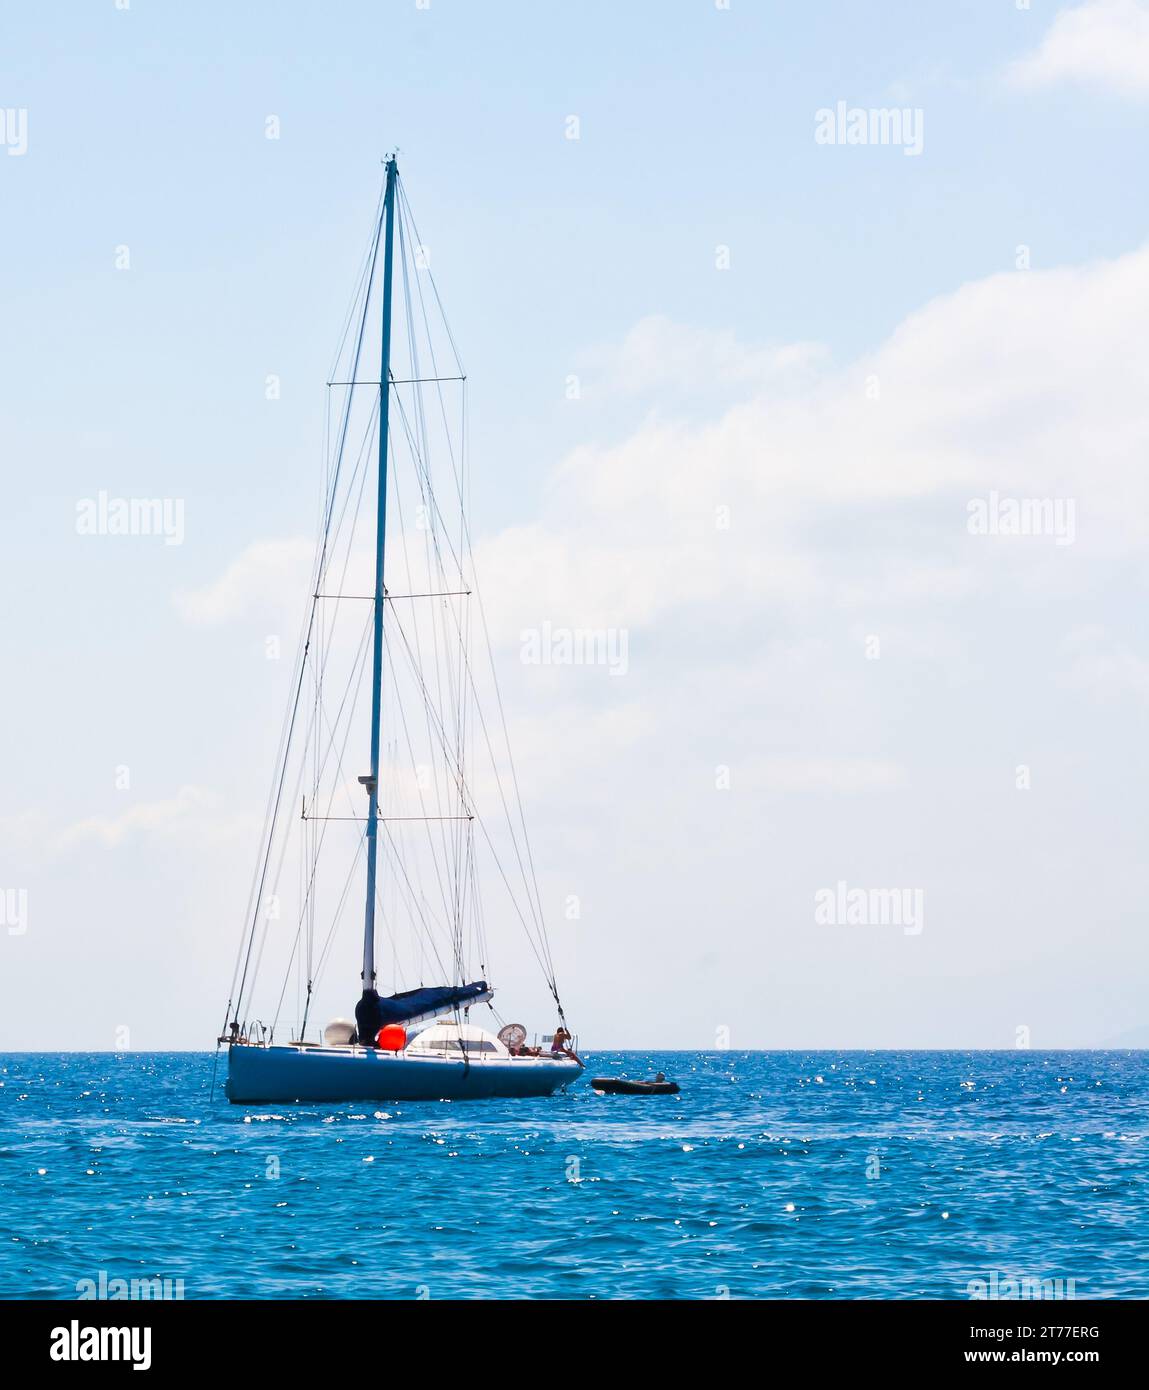 Beau voilier bateau à voile mer Méditerranée bleu horizon de l'océan Banque D'Images